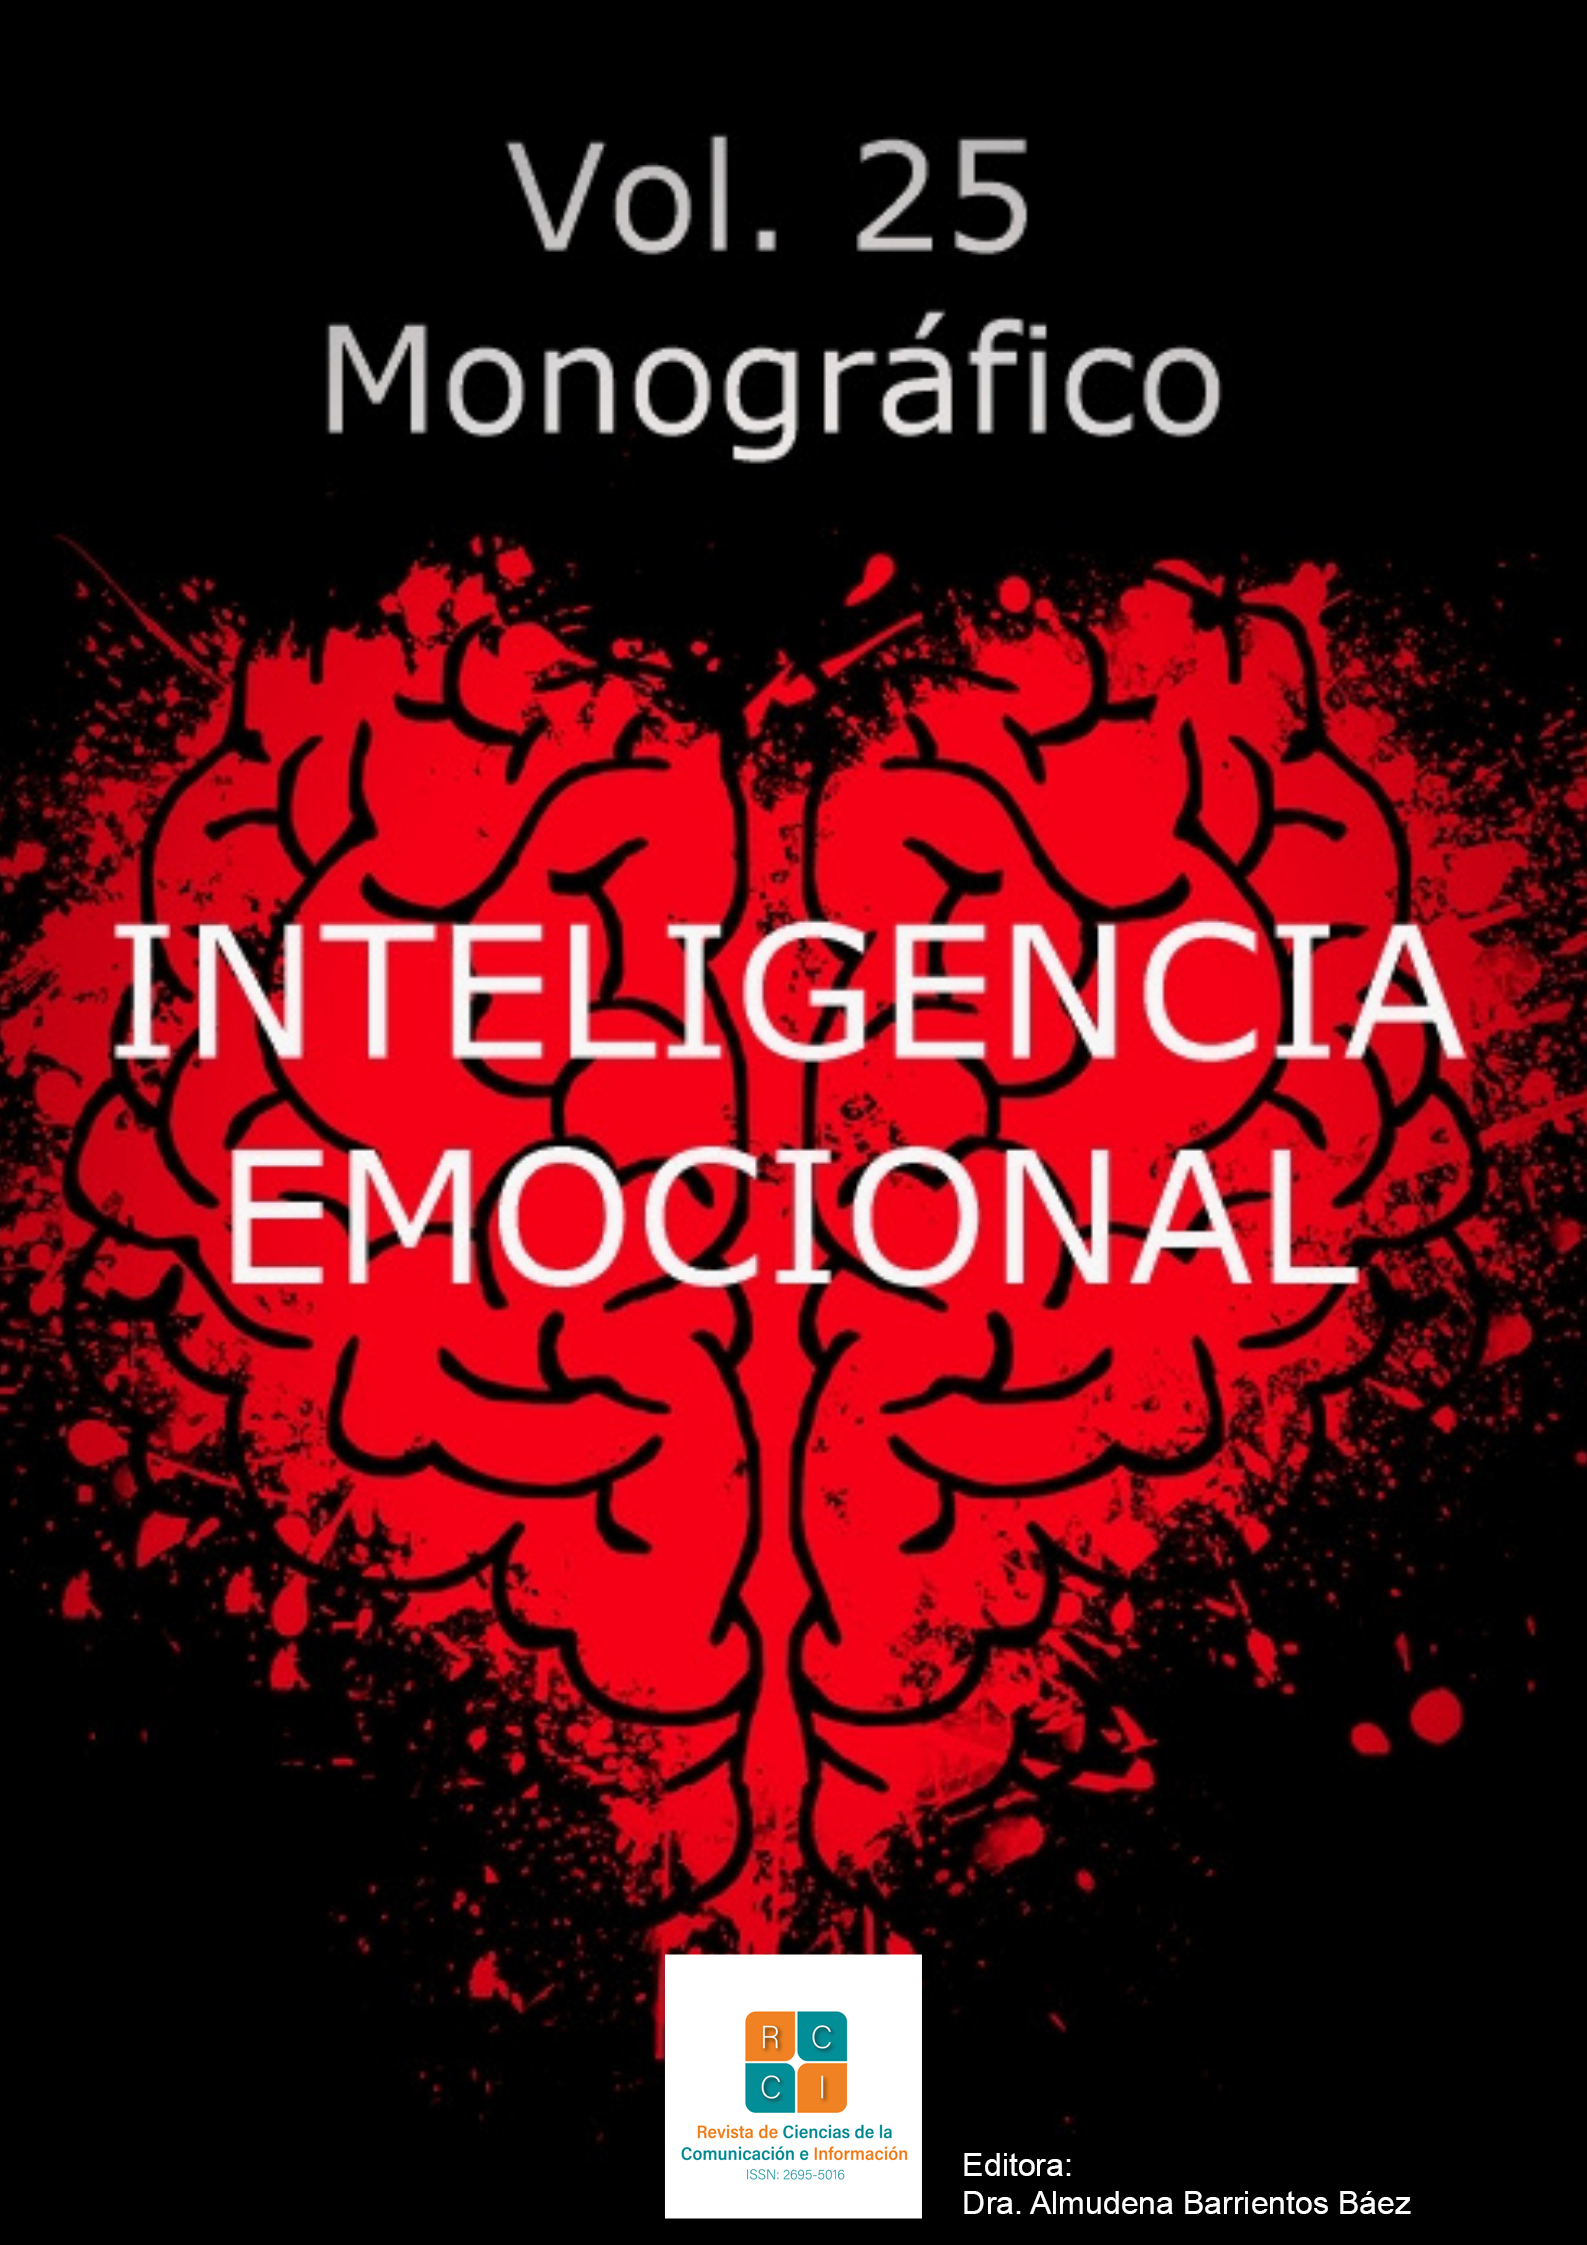 Portada del monográfico un cerebro rojo en fondo negro con letreros en blanco que dicen Vol. 25 Monográfico Inteligencia Emocional Editora Dra. Almudena Barrientos Báez